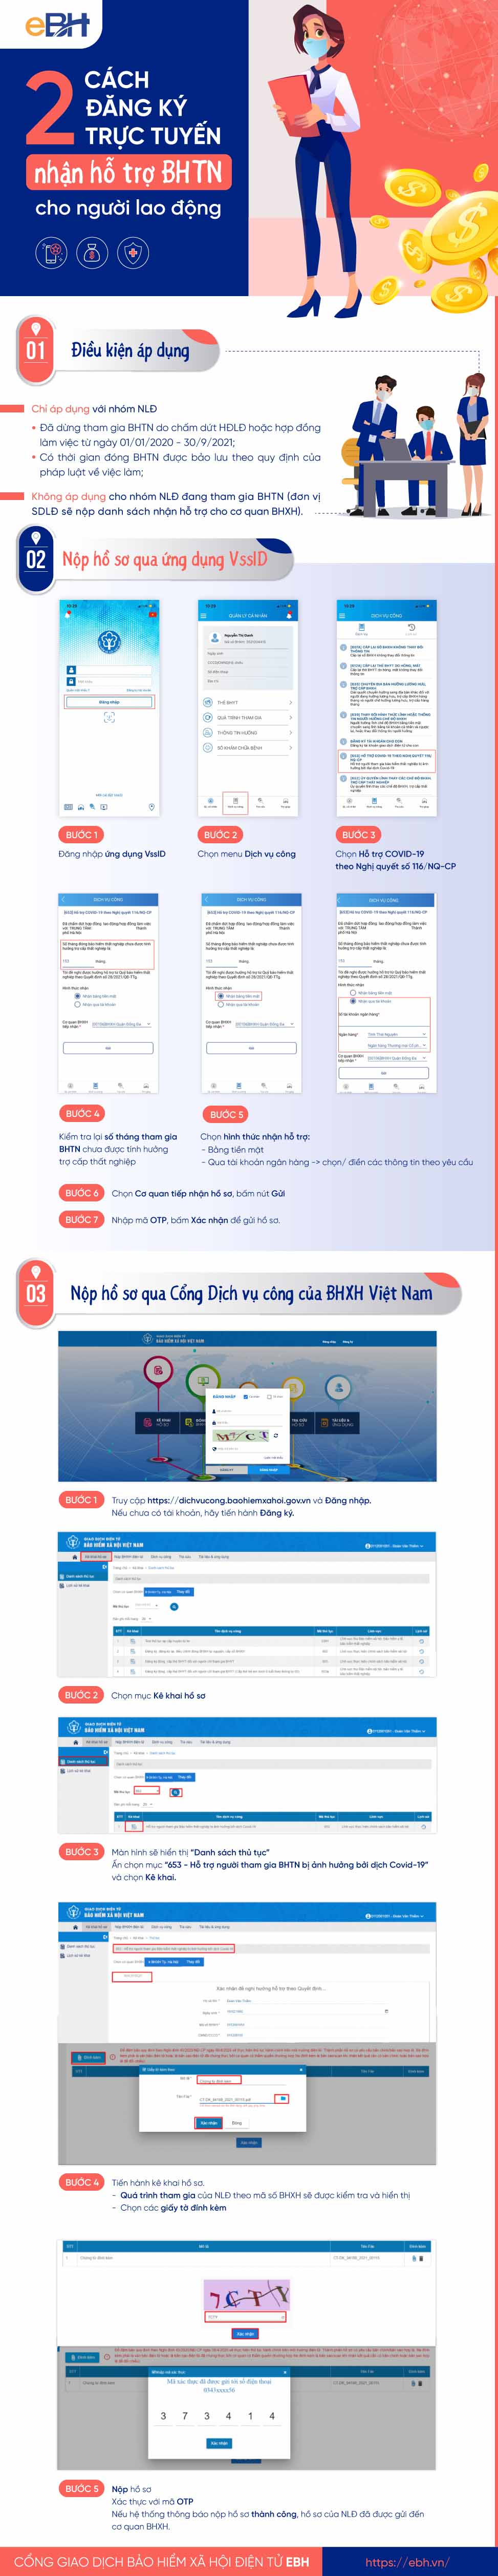 Infographic 2 cách đăng ký trực tuyến nhận hỗ trợ BHTN cho người lao động